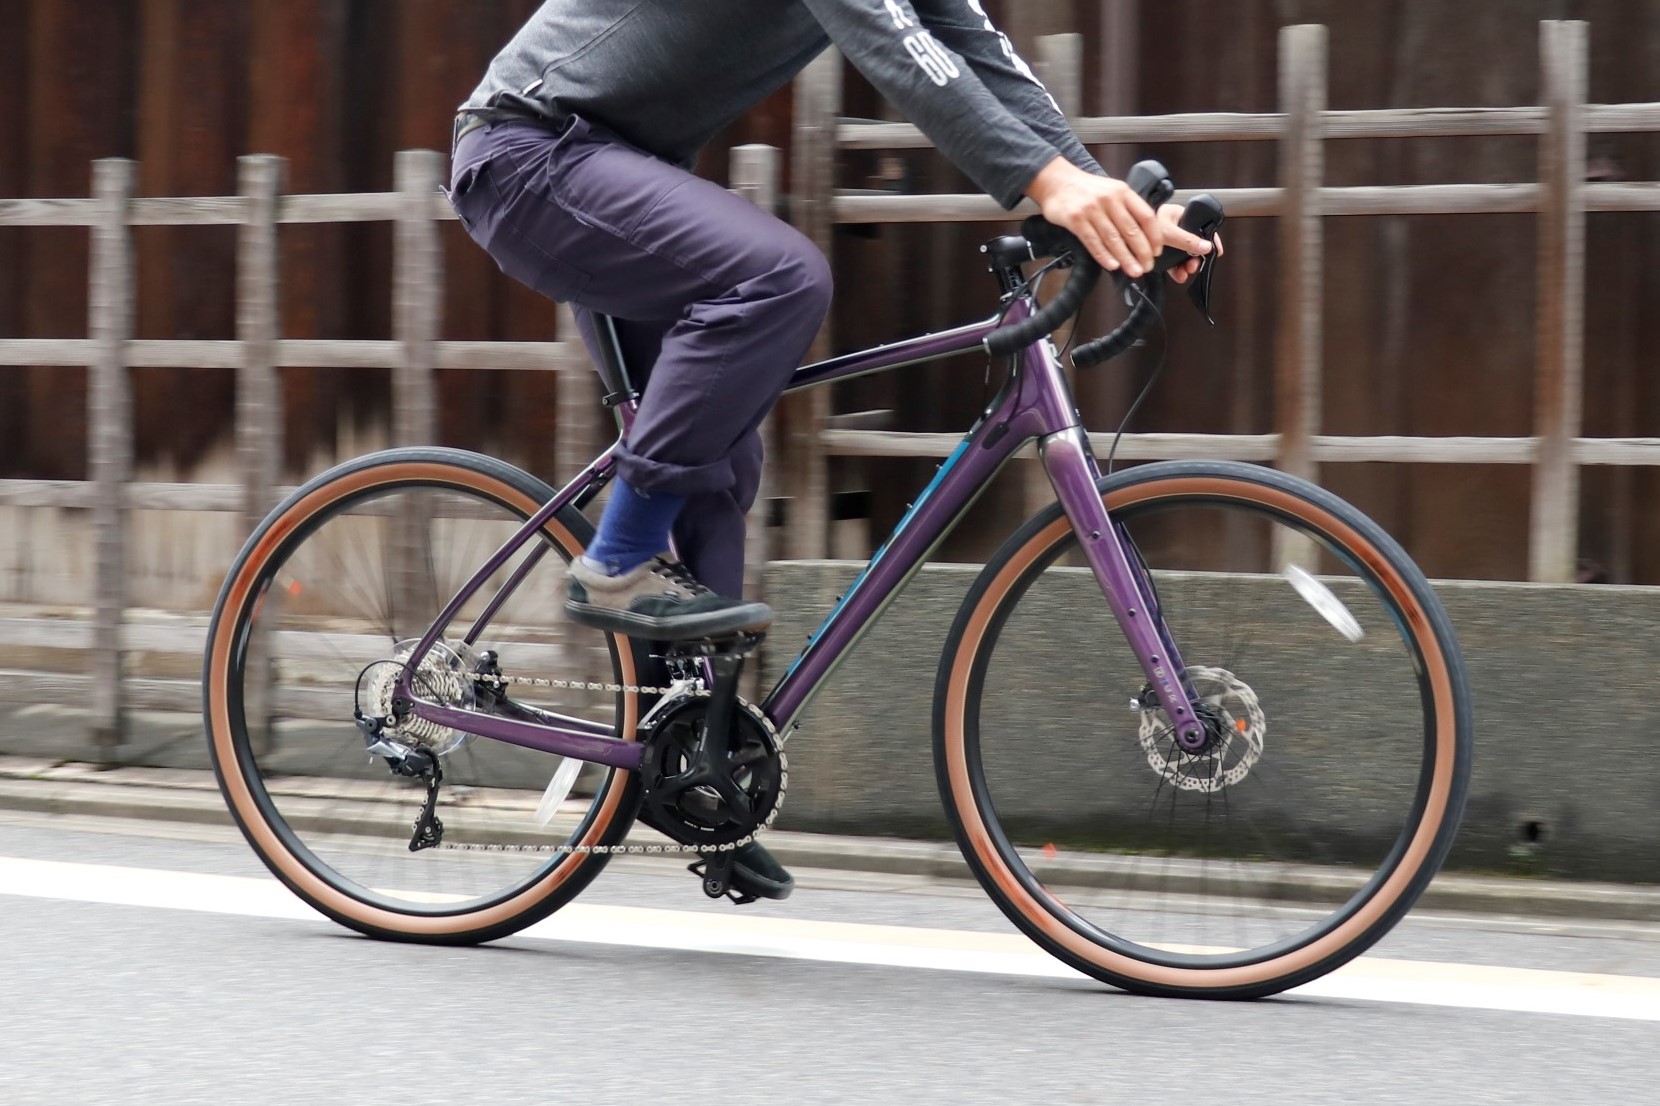 Blog どう考えてもオススメしたい ロードバイク Mtb グラベルへ フルカーボンを採用した究極のファストツーリングバイク Kona コナ 19モデル Libre リブレ がセールになっております 京都のスポーツ自転車専門 エイリン丸太町店